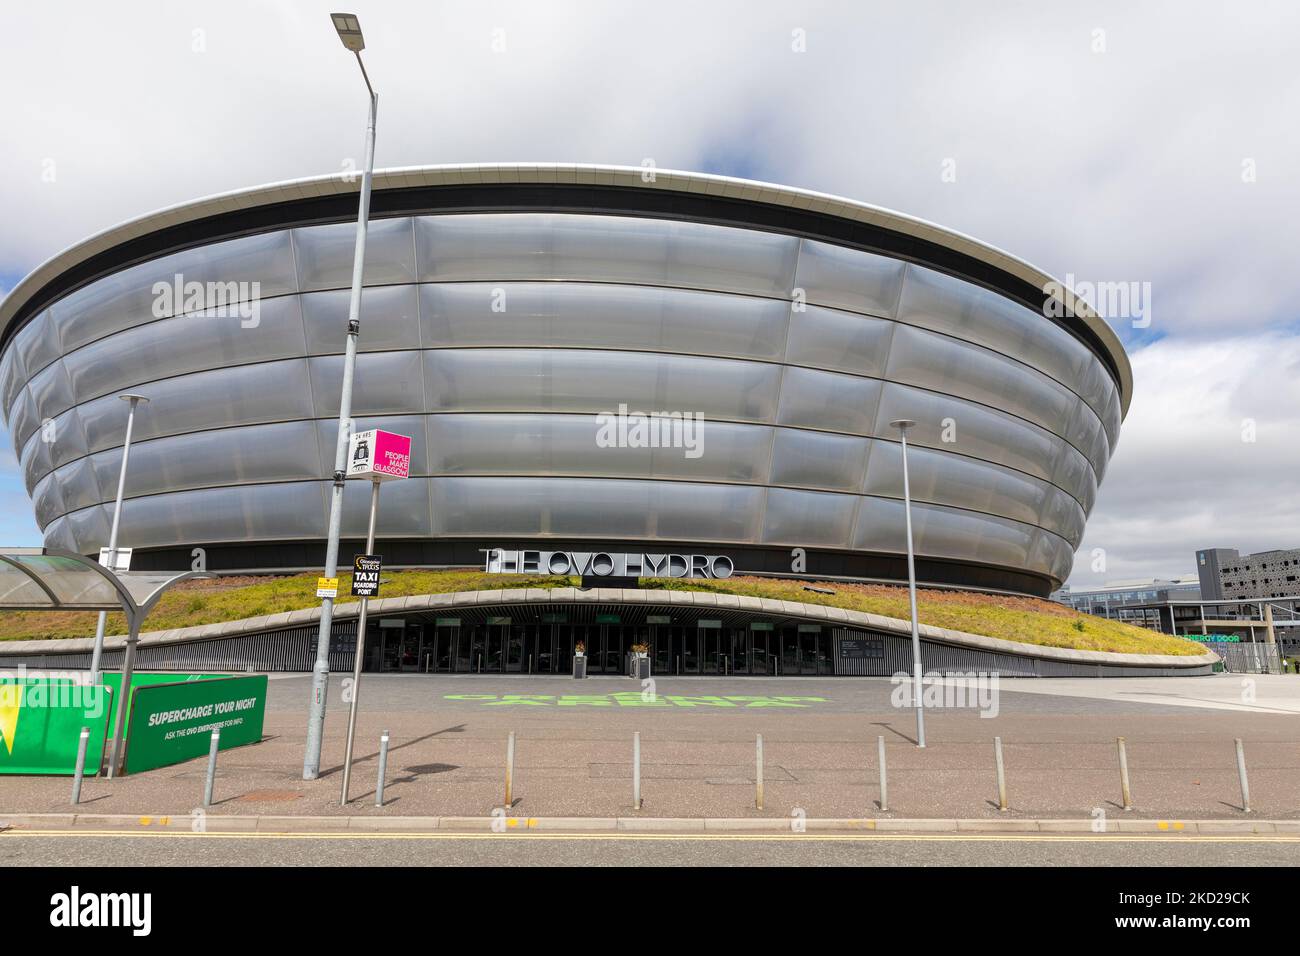 L'arena al coperto Ovo Hydro scottish a Glasgow, nel campus scozzese degli eventi, Glasgow, Scozia, Regno Unito, estate 2022 Foto Stock